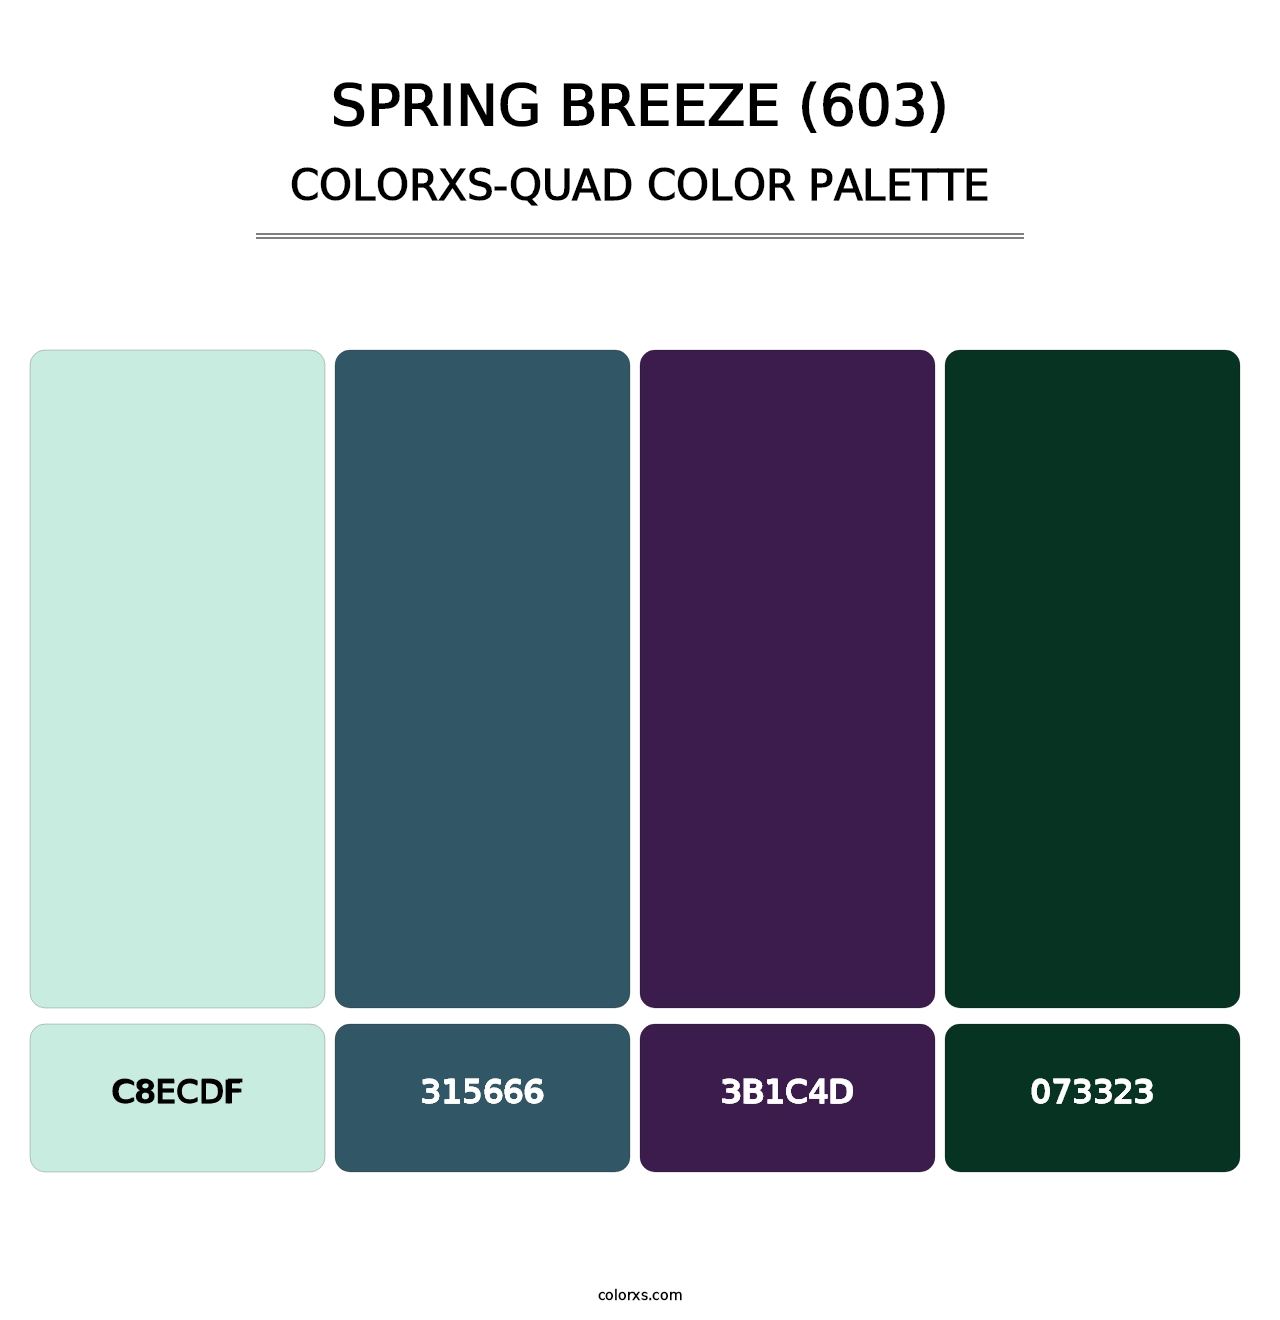 Spring Breeze (603) - Colorxs Quad Palette